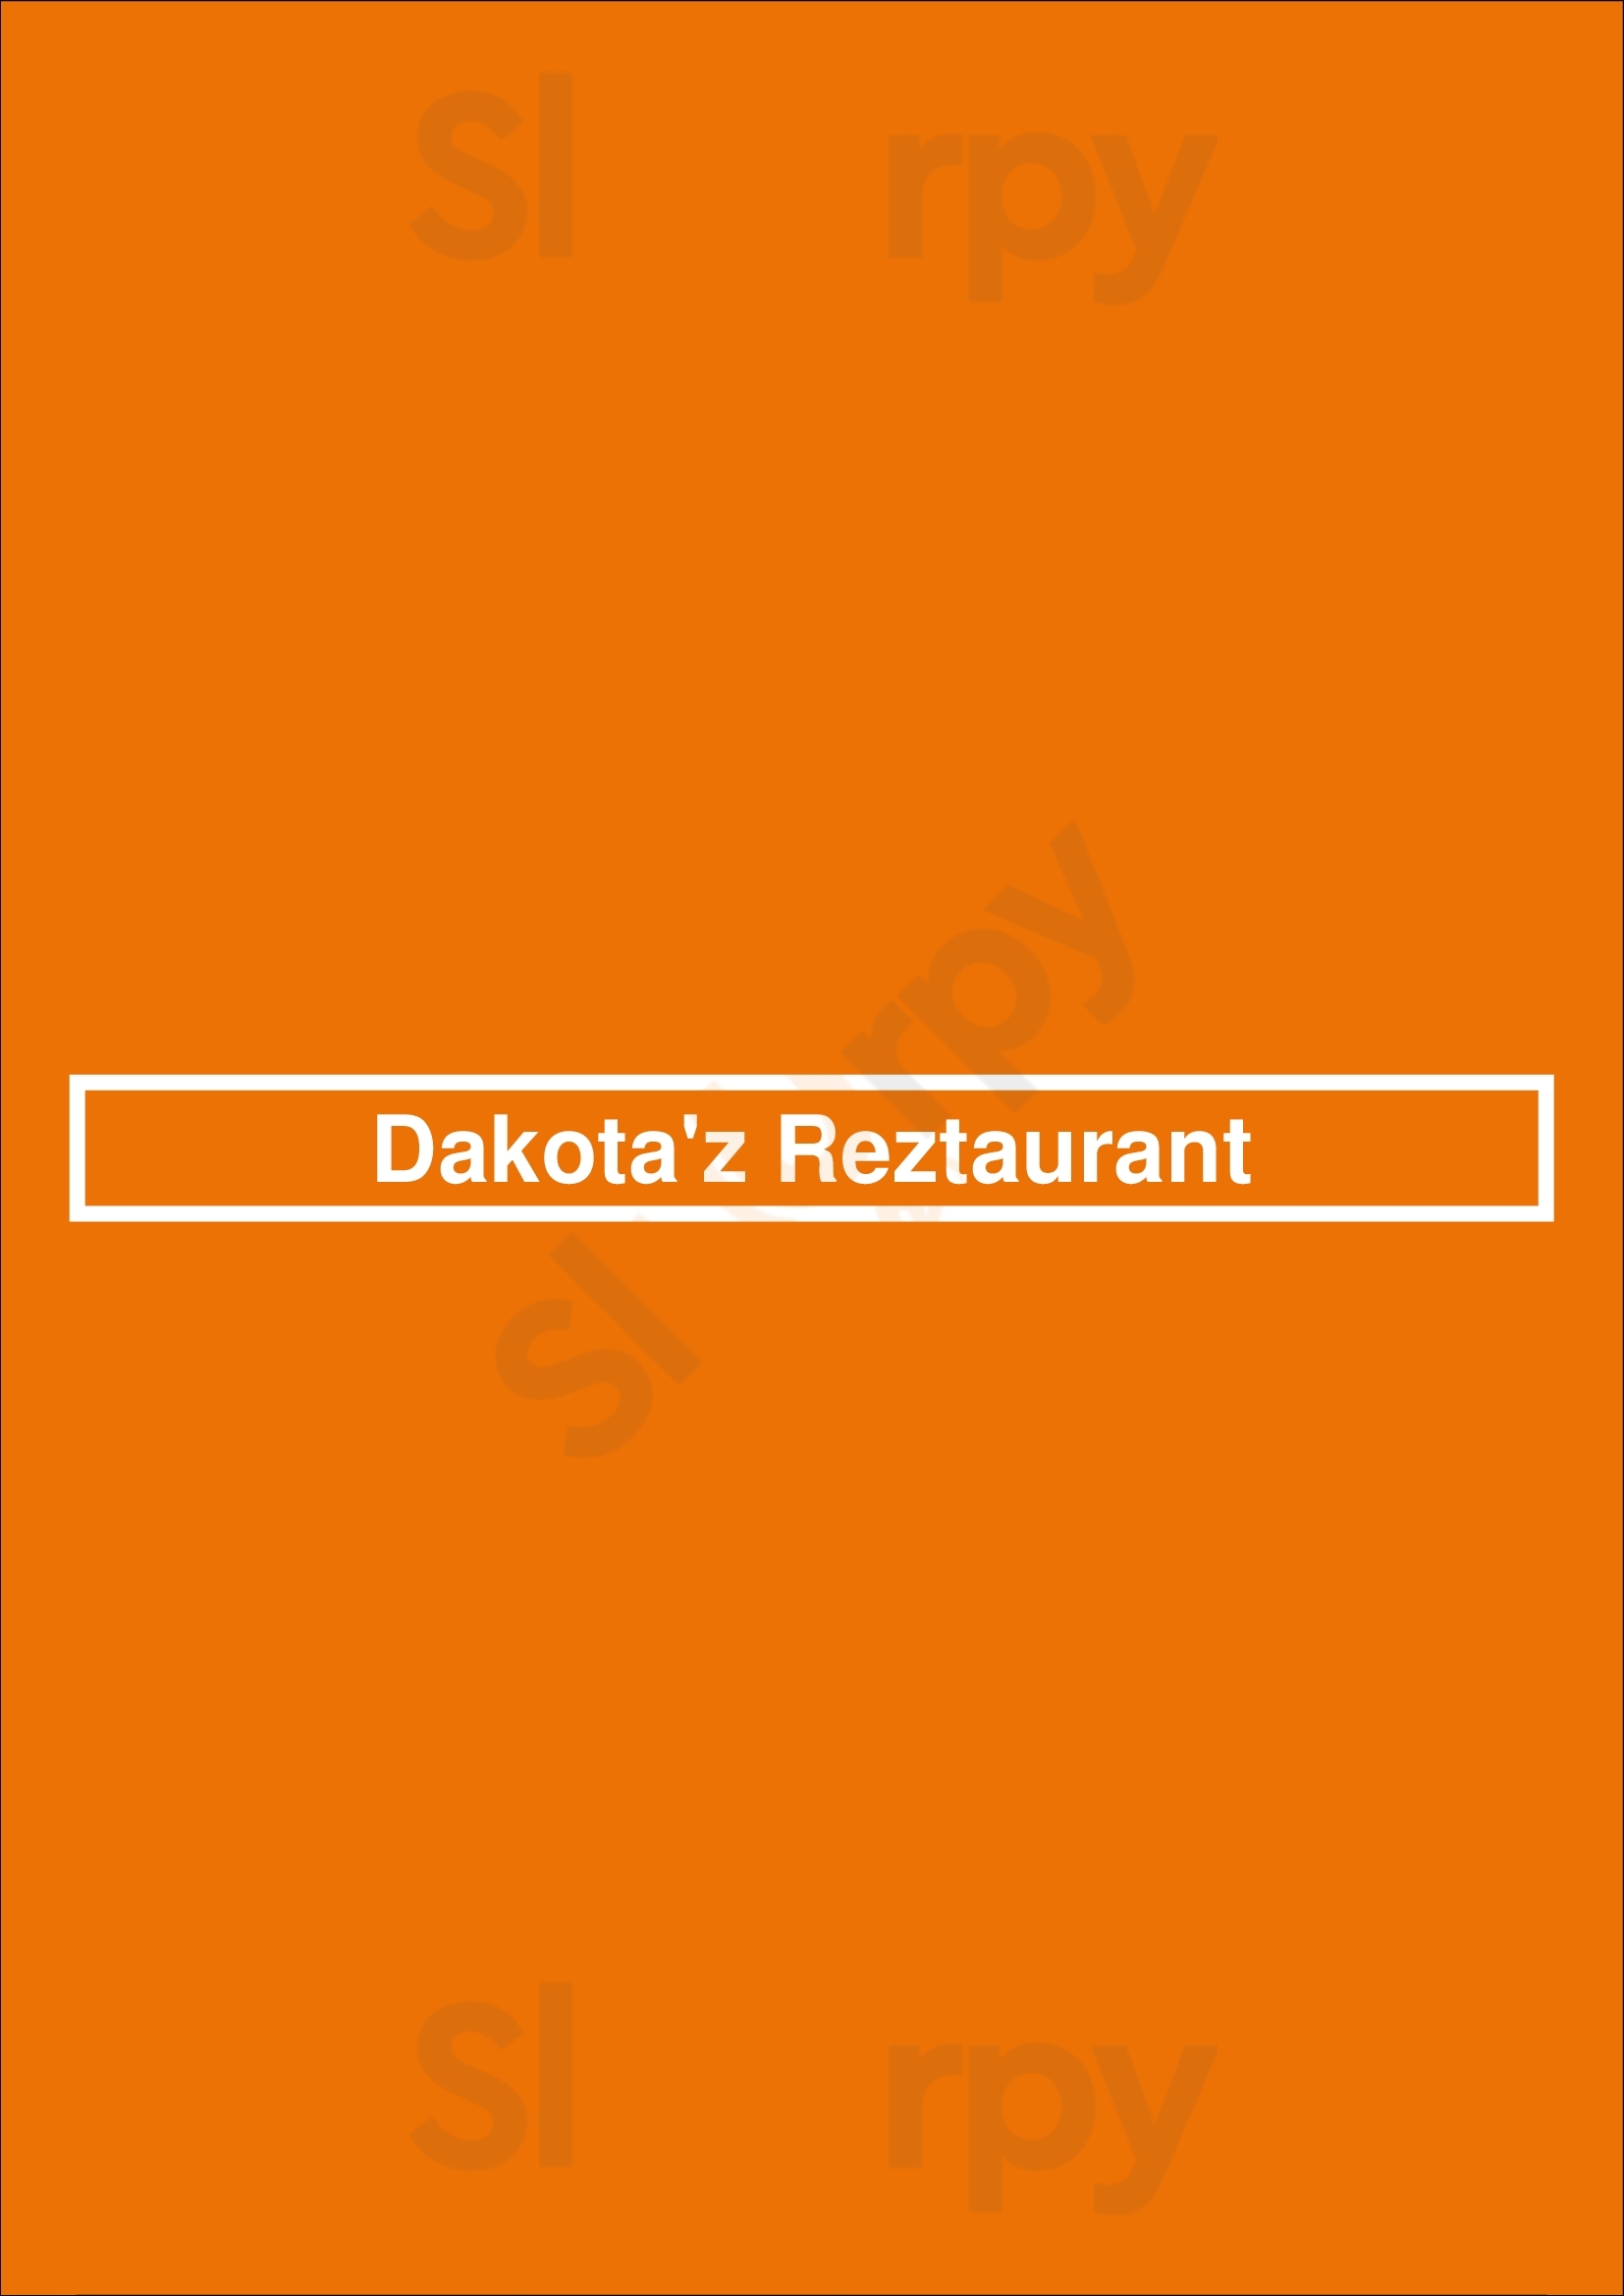 Dakota'z Reztaurant Roosendaal Menu - 1